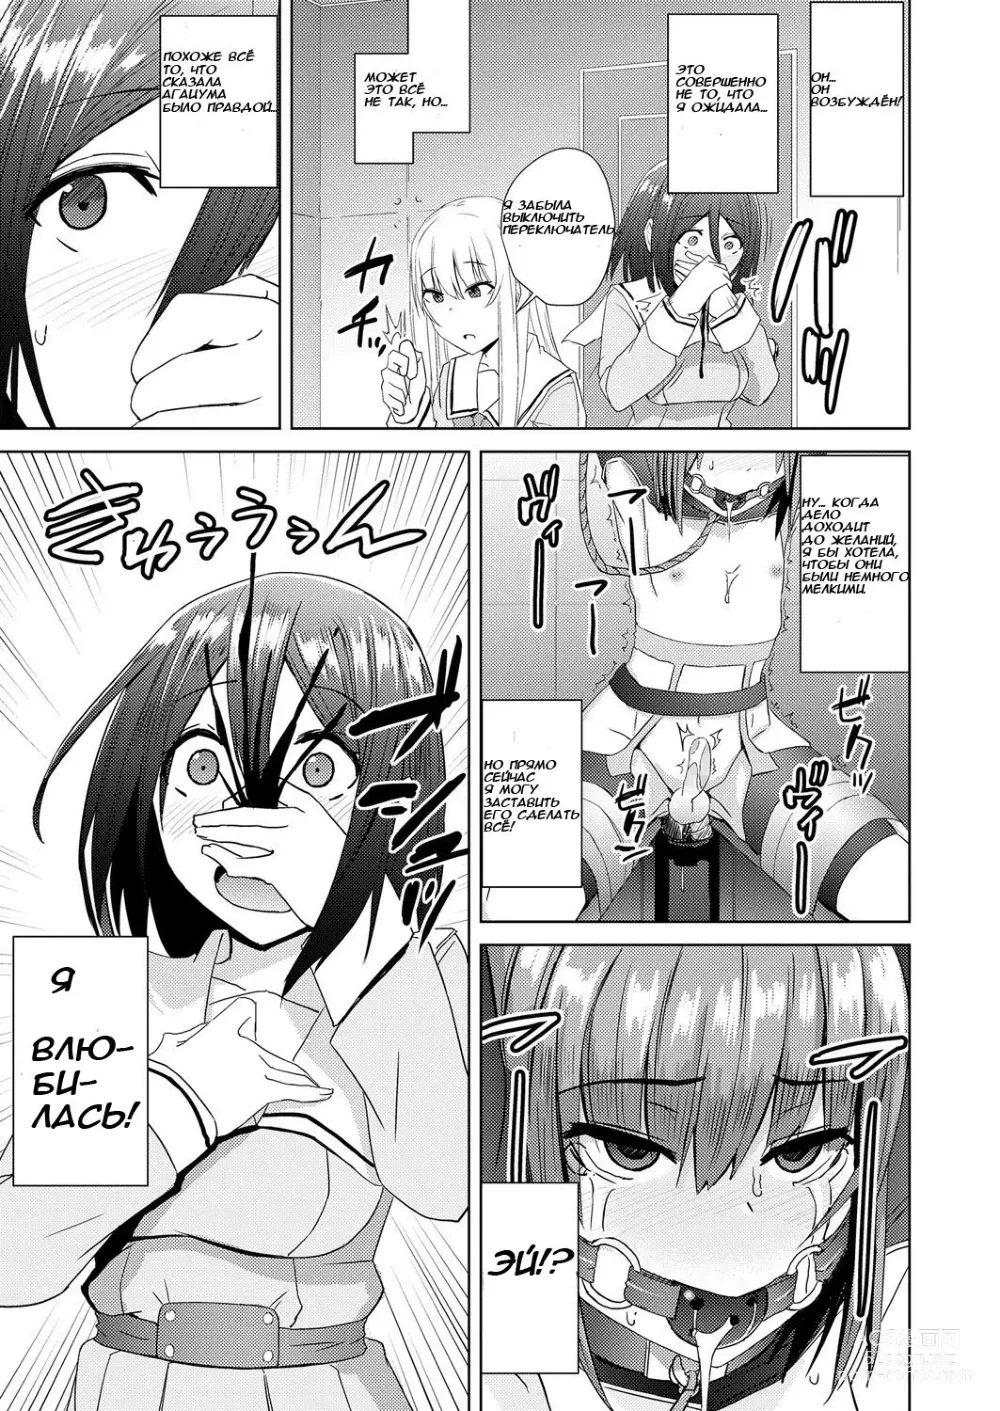 Page 5 of manga Watashitachi no Kizashi